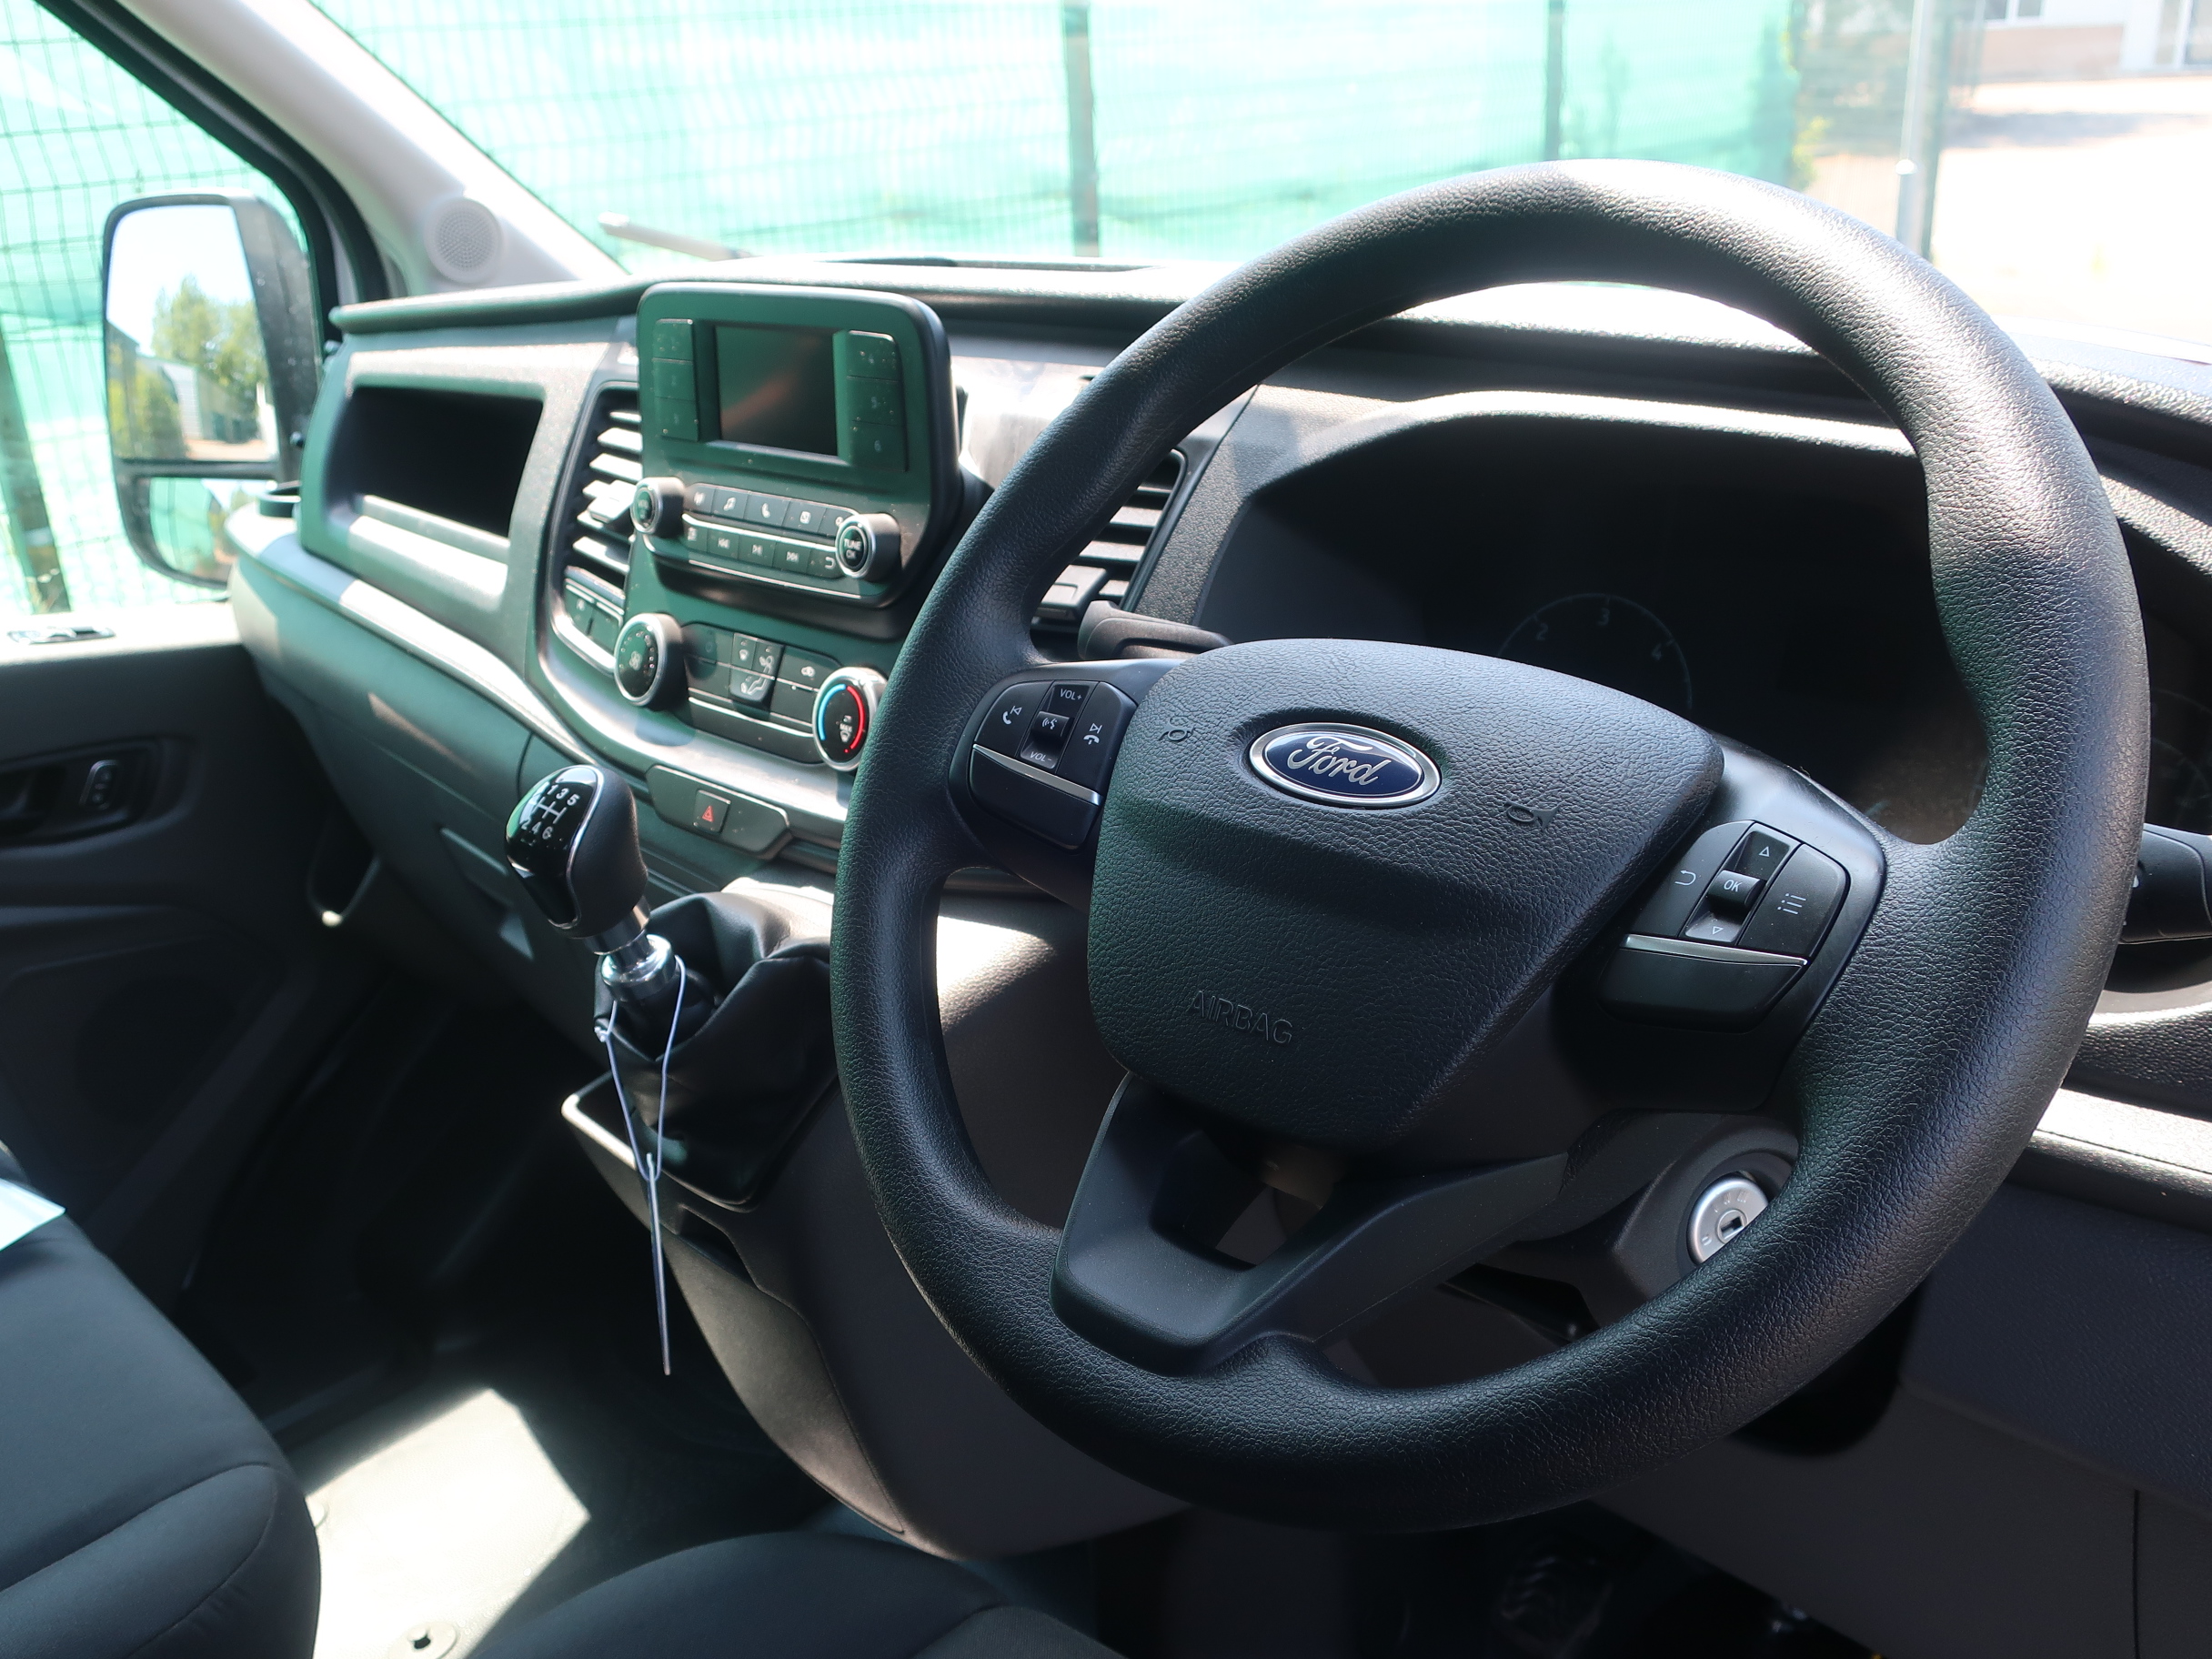 New-Ford-Transit-Leader-350-FWD-Welfare-Van-Internal-Steering-Wheel